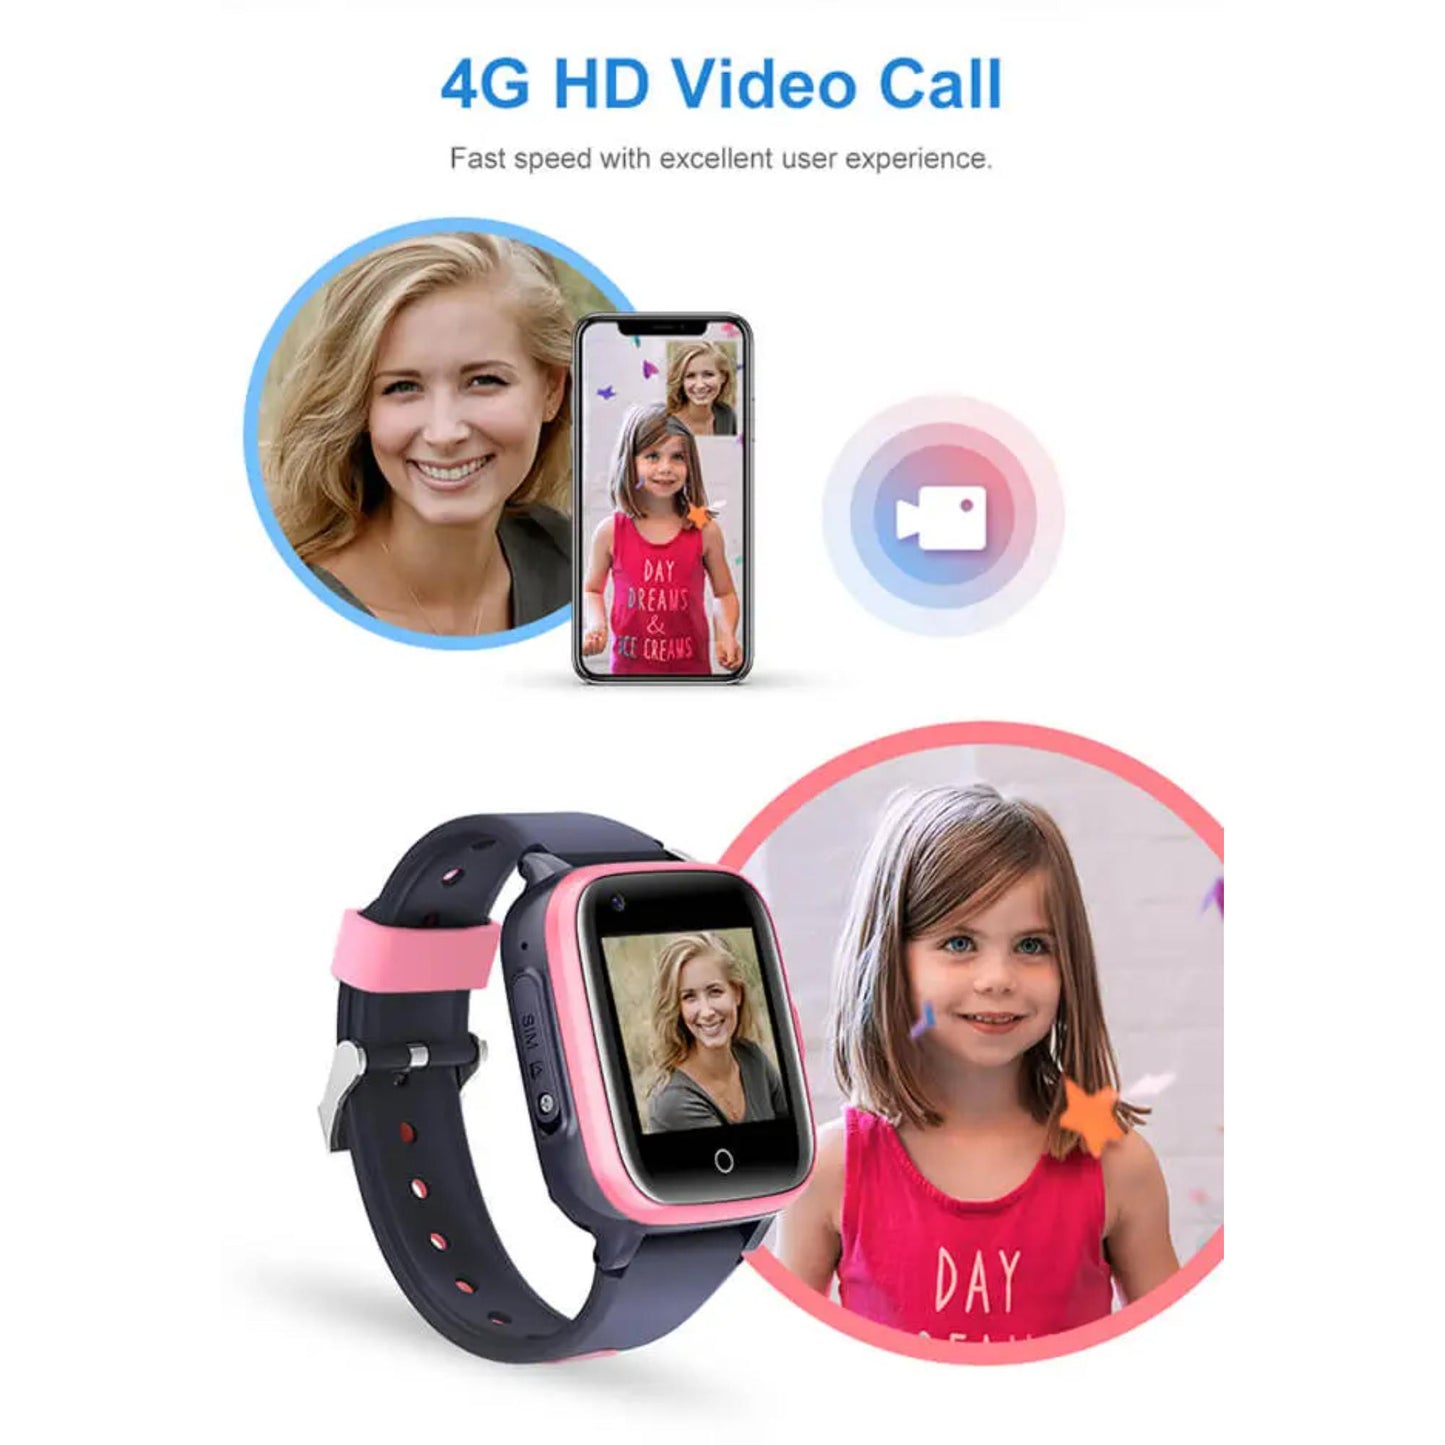 Valdus D31 Kinder-Smartwatch - Kompatibel mit 4G FDD, Echtzeit-GPS-Ortung, SOS-Funktionalität, Sprach- und Video-Messaging. | Blue Chilli Electronics.